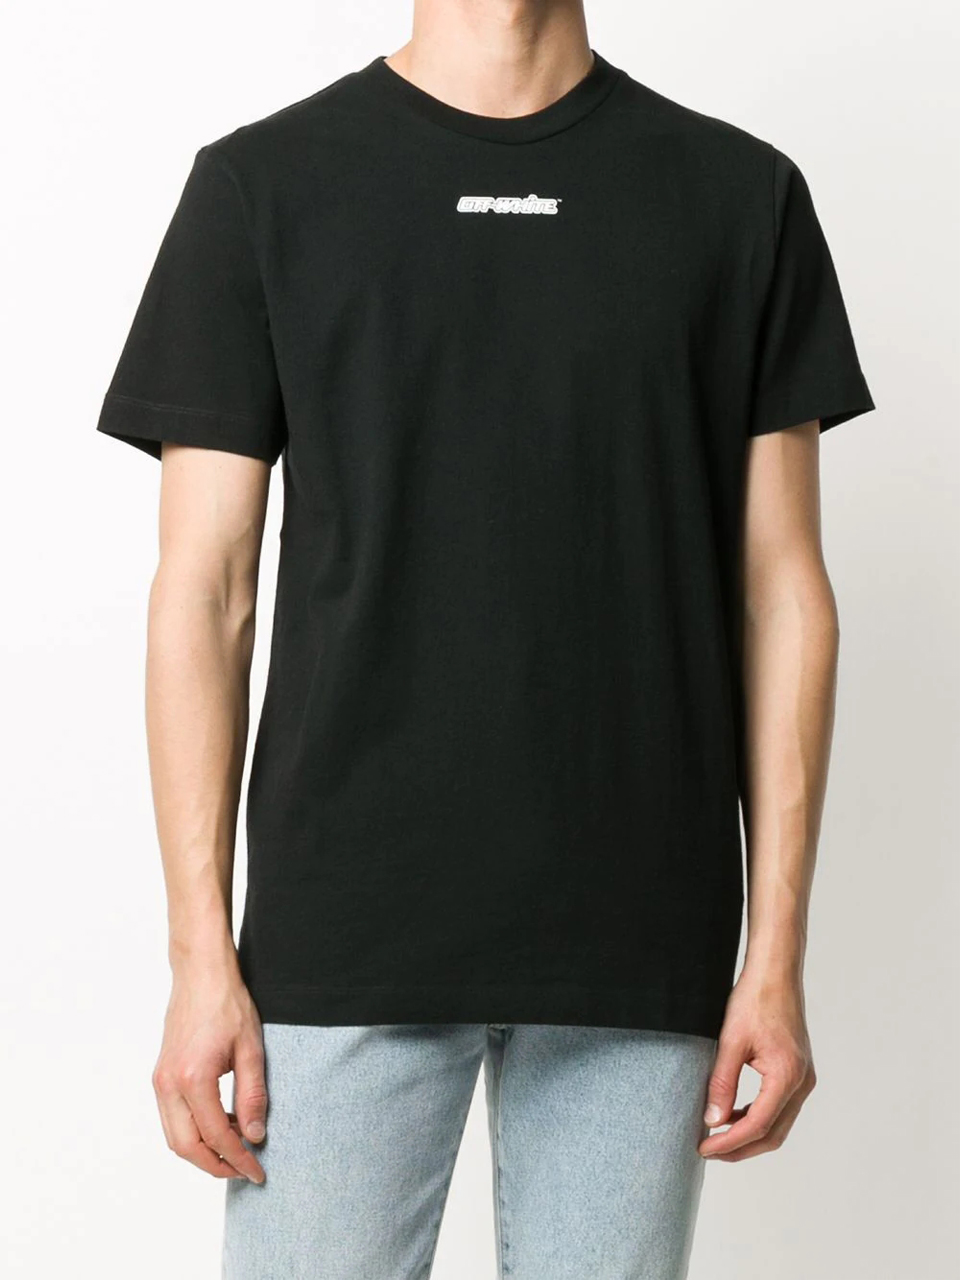 Imagem de: Camiseta Off-White Marker Arrows Preta com Estampa Rosa